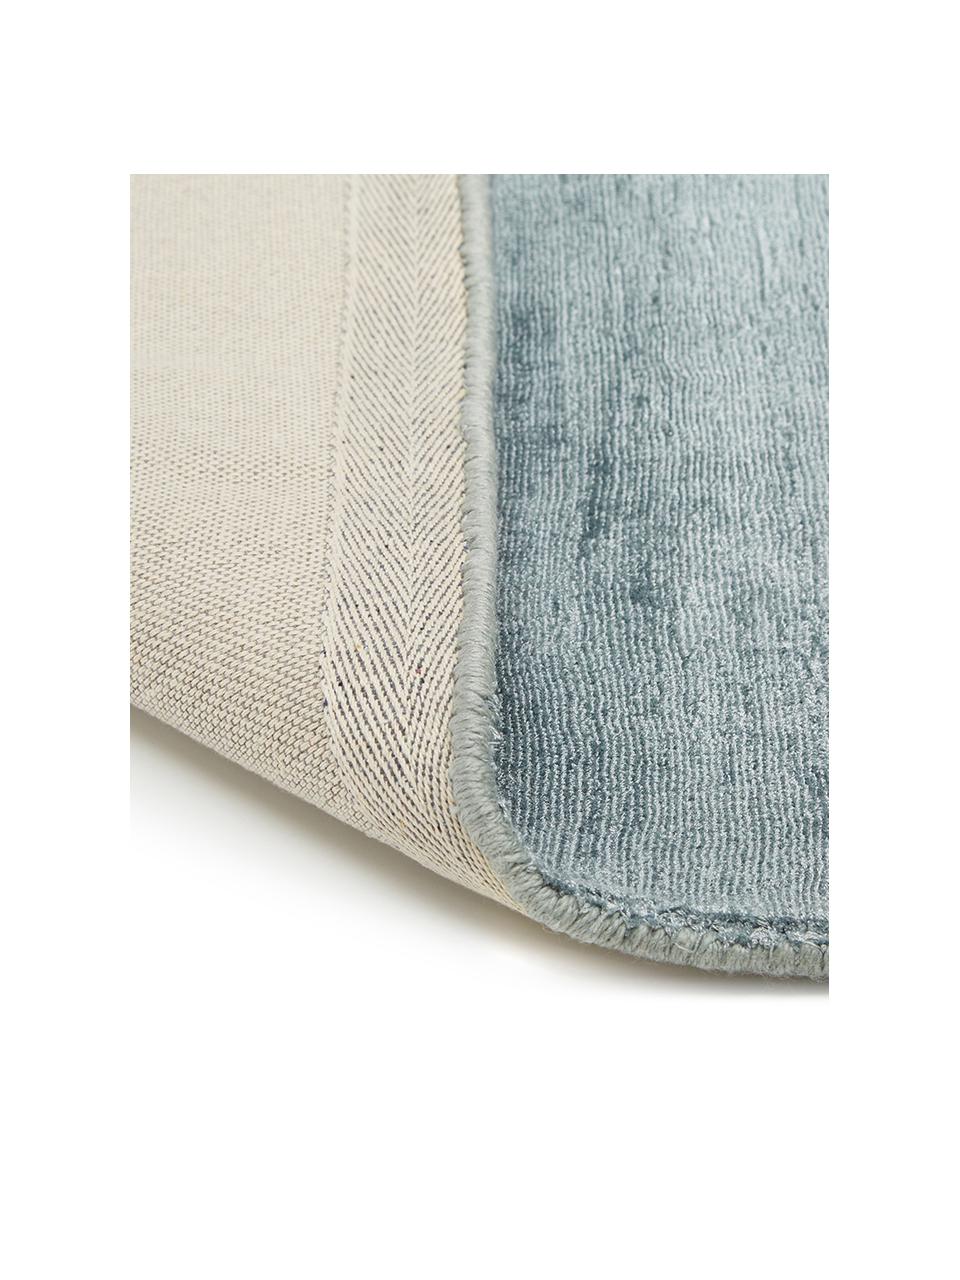 Tappeto in viscosa tessuto a mano Jane, Retro: 100% cotone Il materiale , Blu ghiaccio, Larg. 160 x Lung. 230 cm  (taglia M)